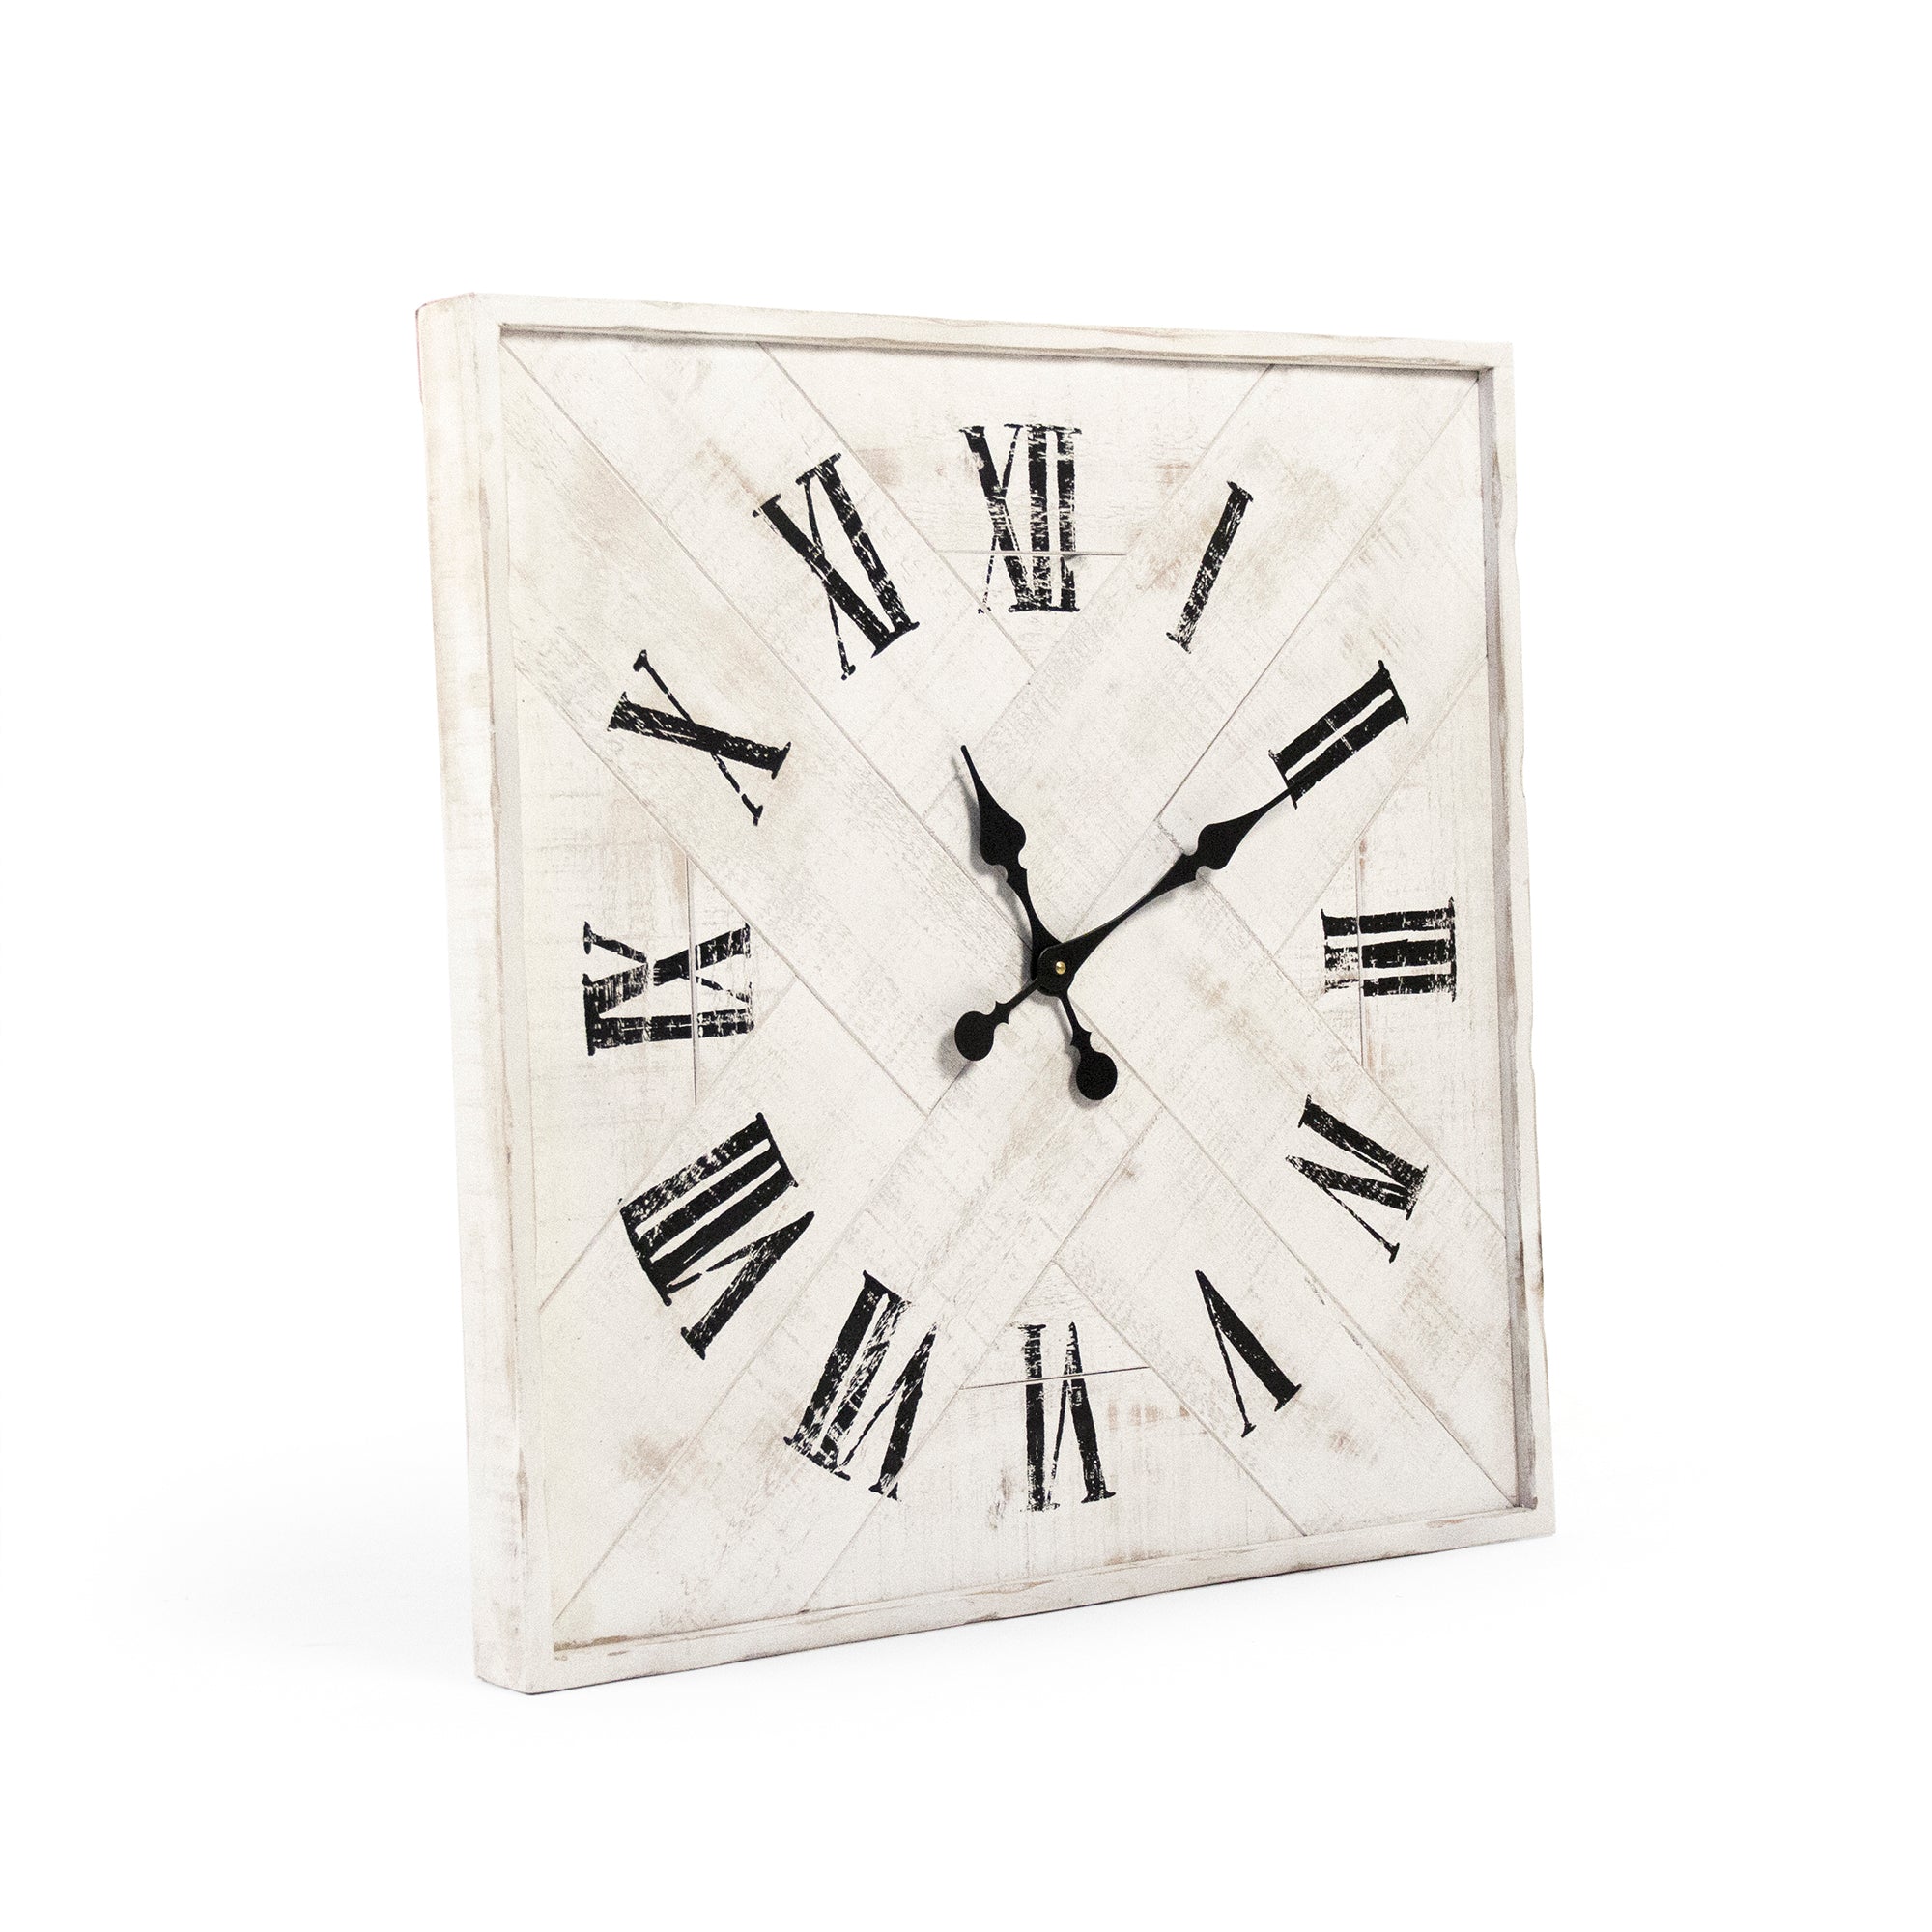 Corbett Wall Clock